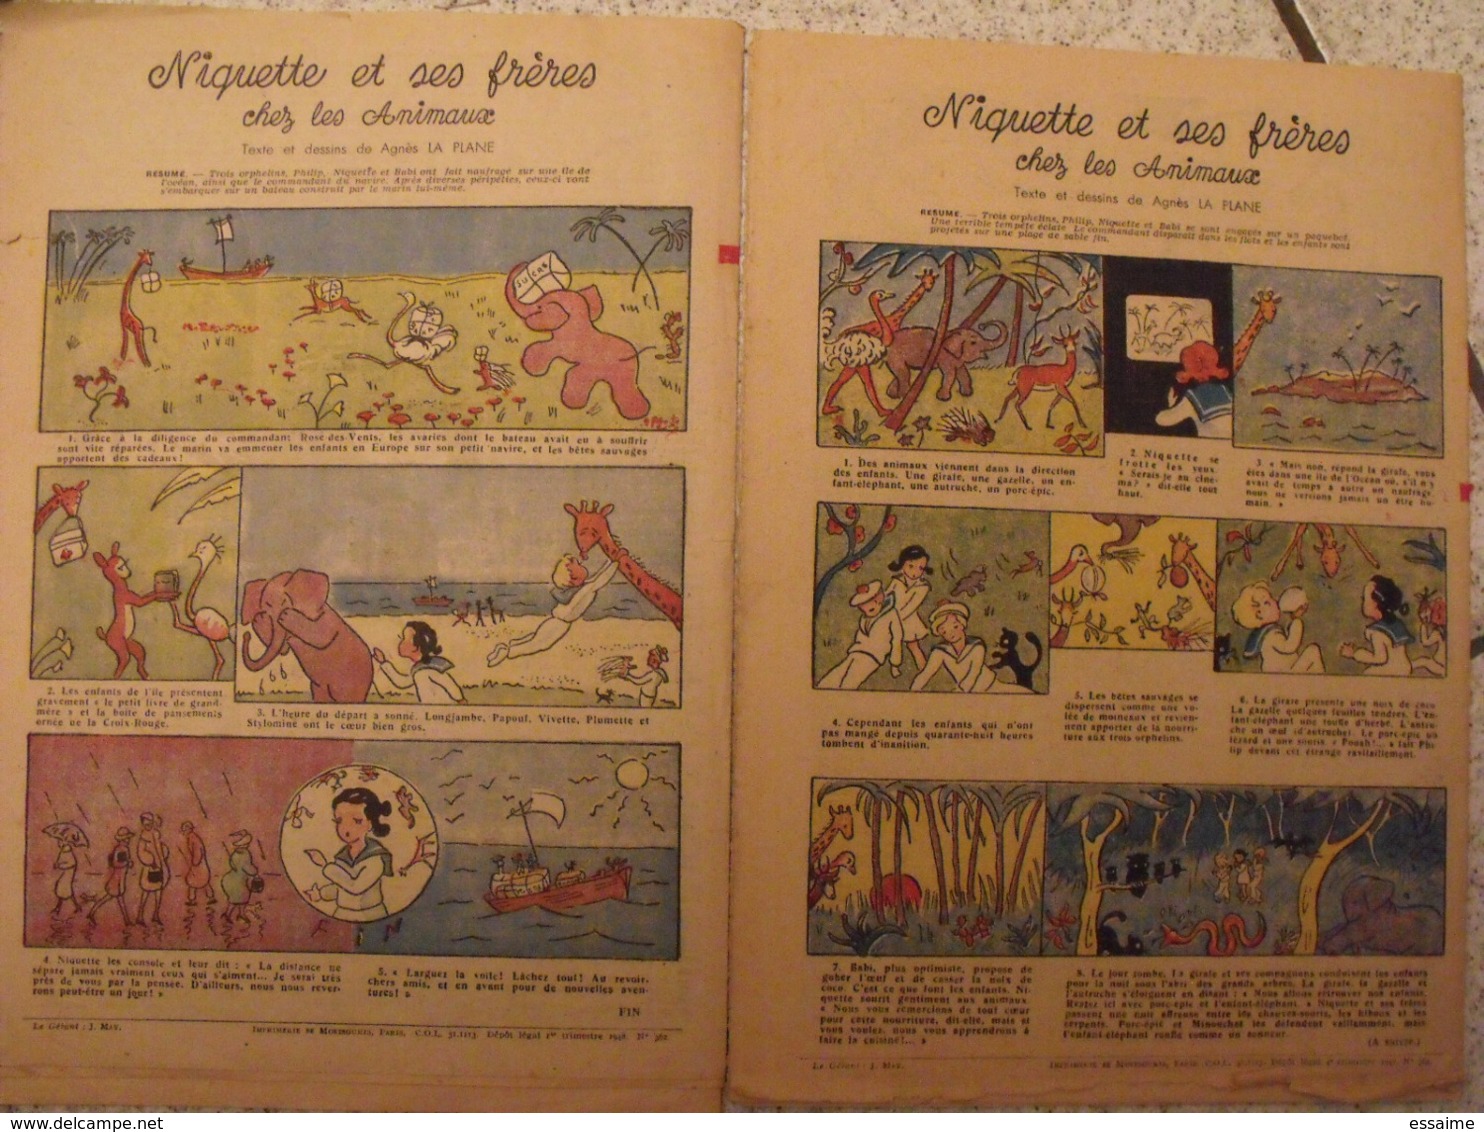 Lisette. 30 n° 1947-50. revue pour fillette. mixi-berel, pinchon (pitchoune), rob-vel, monnier bussemey à redécouvrir